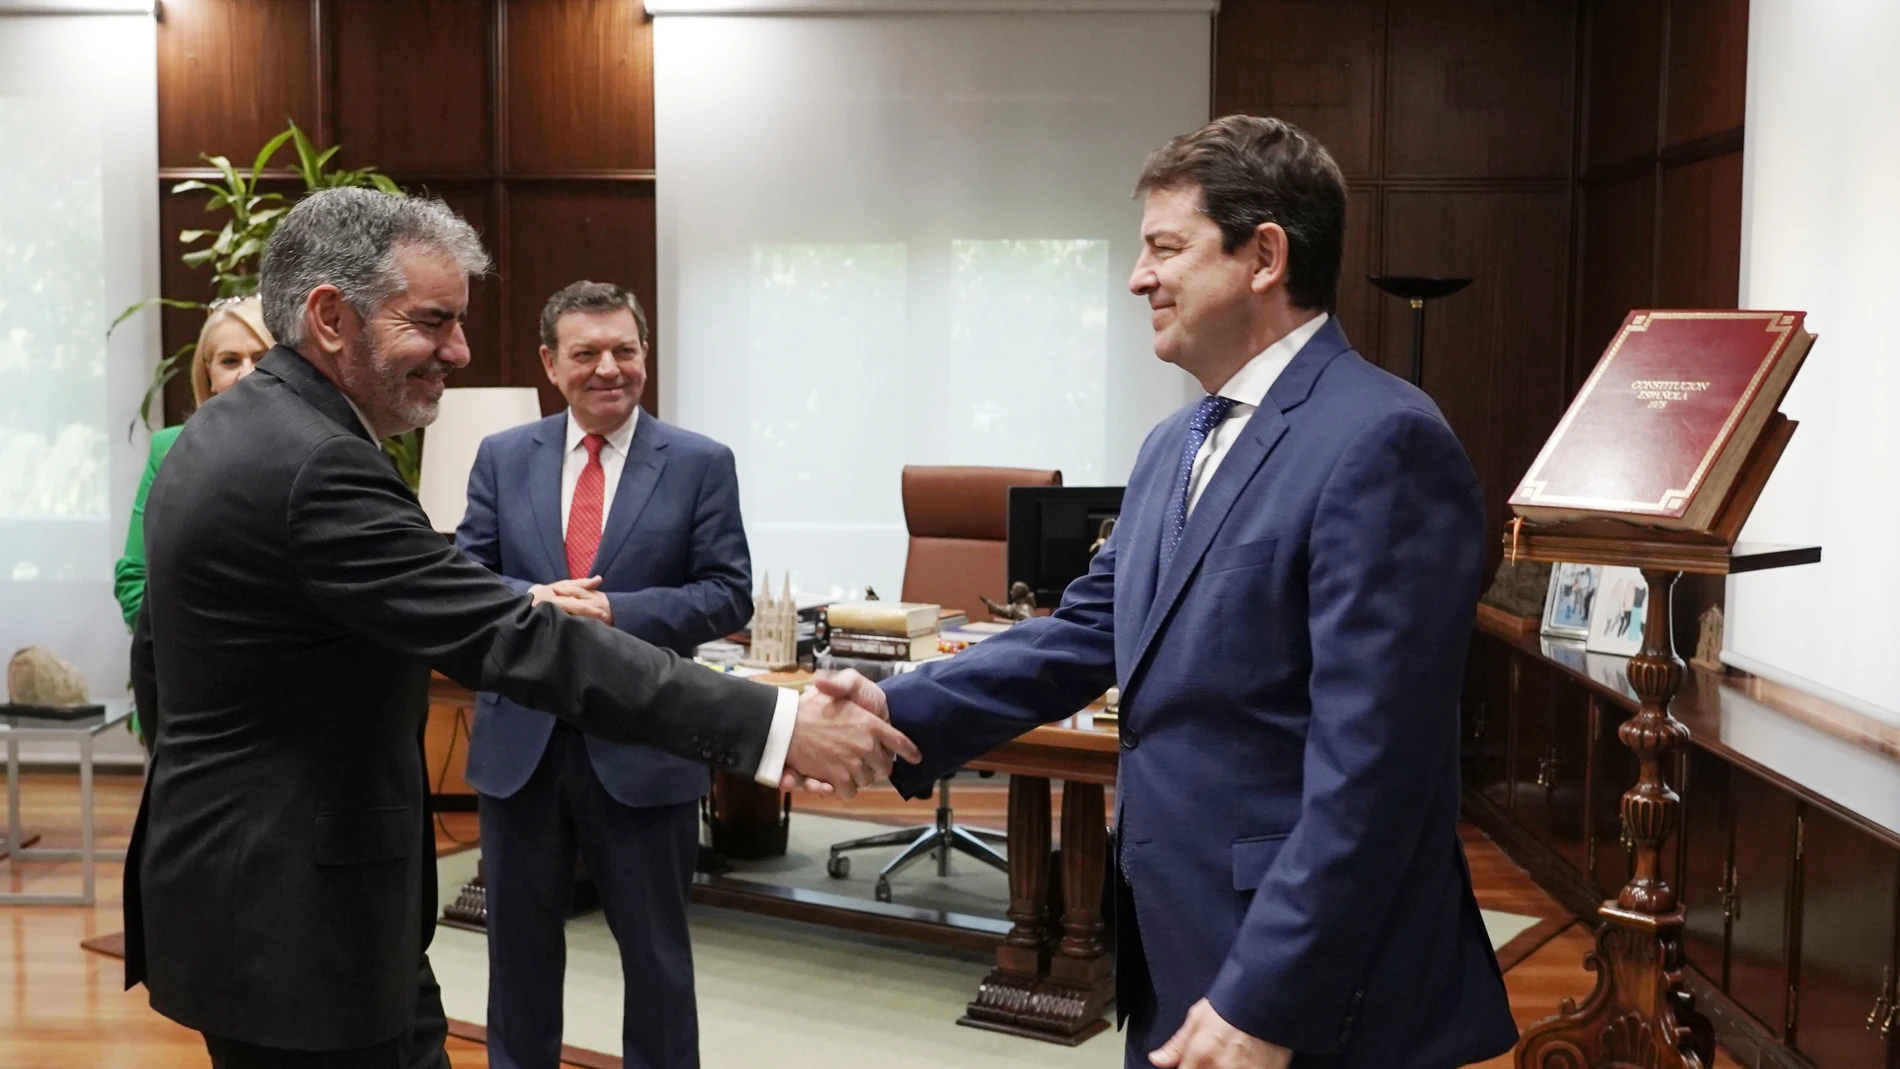 El presidente Alfonso Fernández Mañueco saluda a Benjamín Castro, en presencia del consejero Luis Miguel González Gago